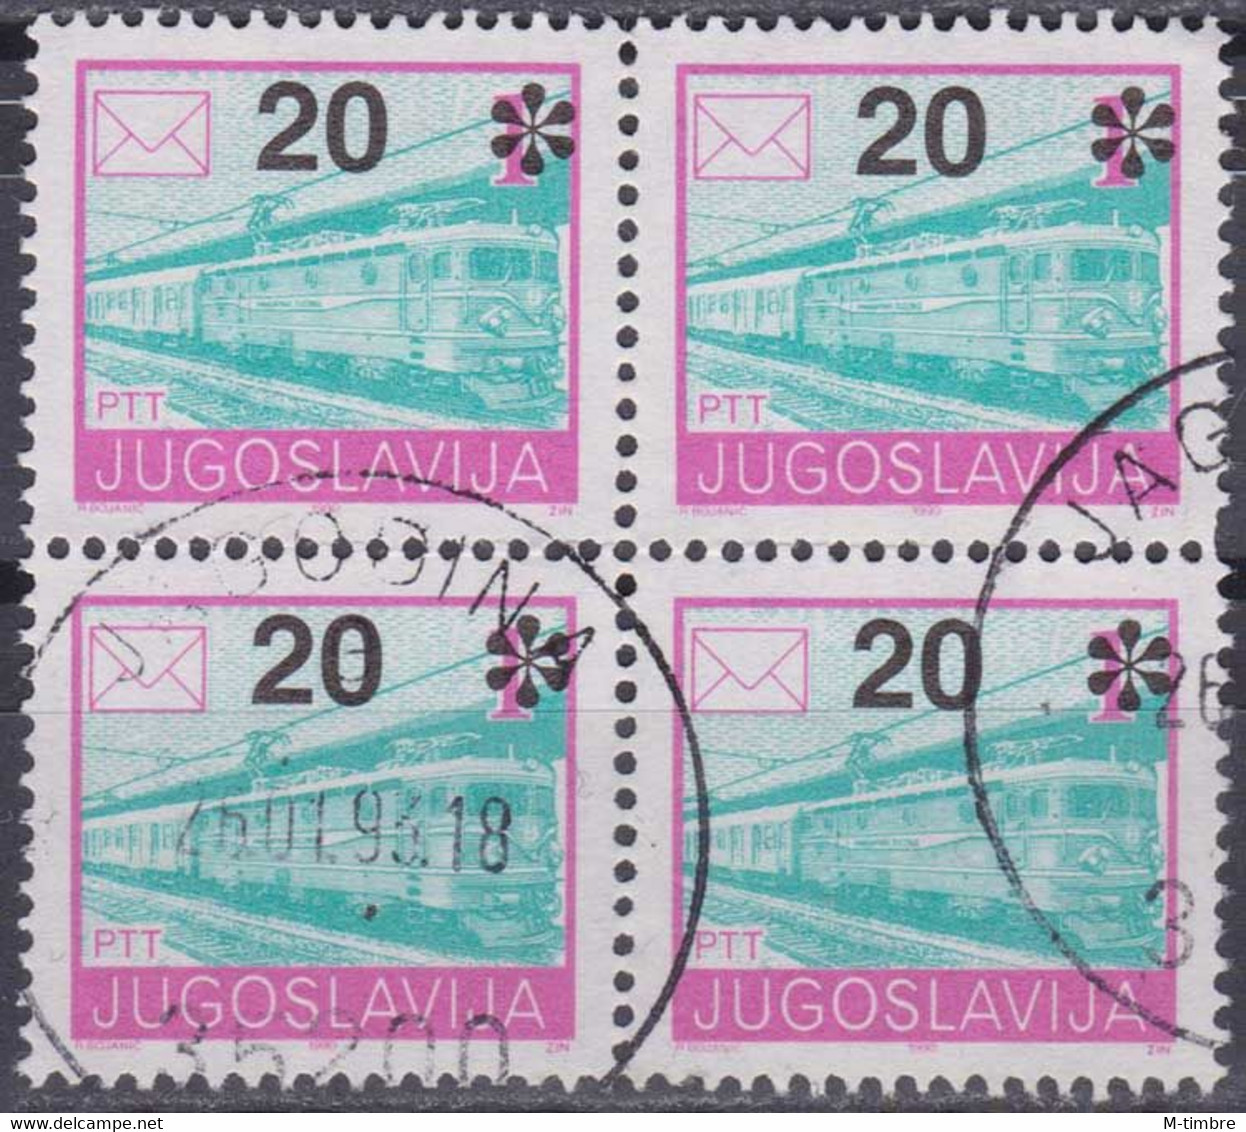 Yougoslavie (13½) YT 2422A Mi 2556A Année 1992 (Used °) Train - Locomotive (Bloc De 4) - Usati